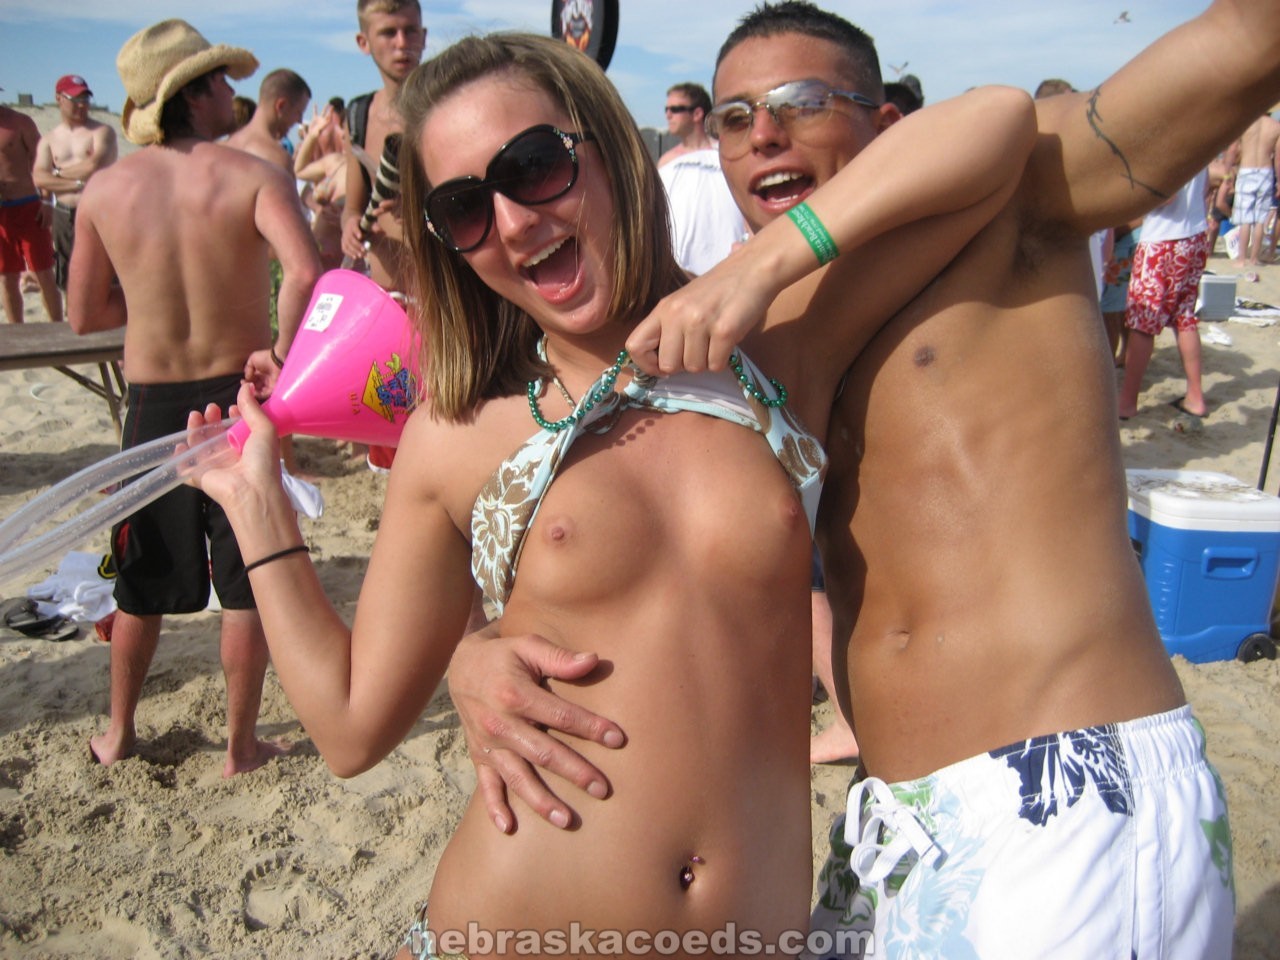 Betrunkene College-Mädchen ziehen sich nackt aus und spielen auf wilden Partys verrückt
 #76739765